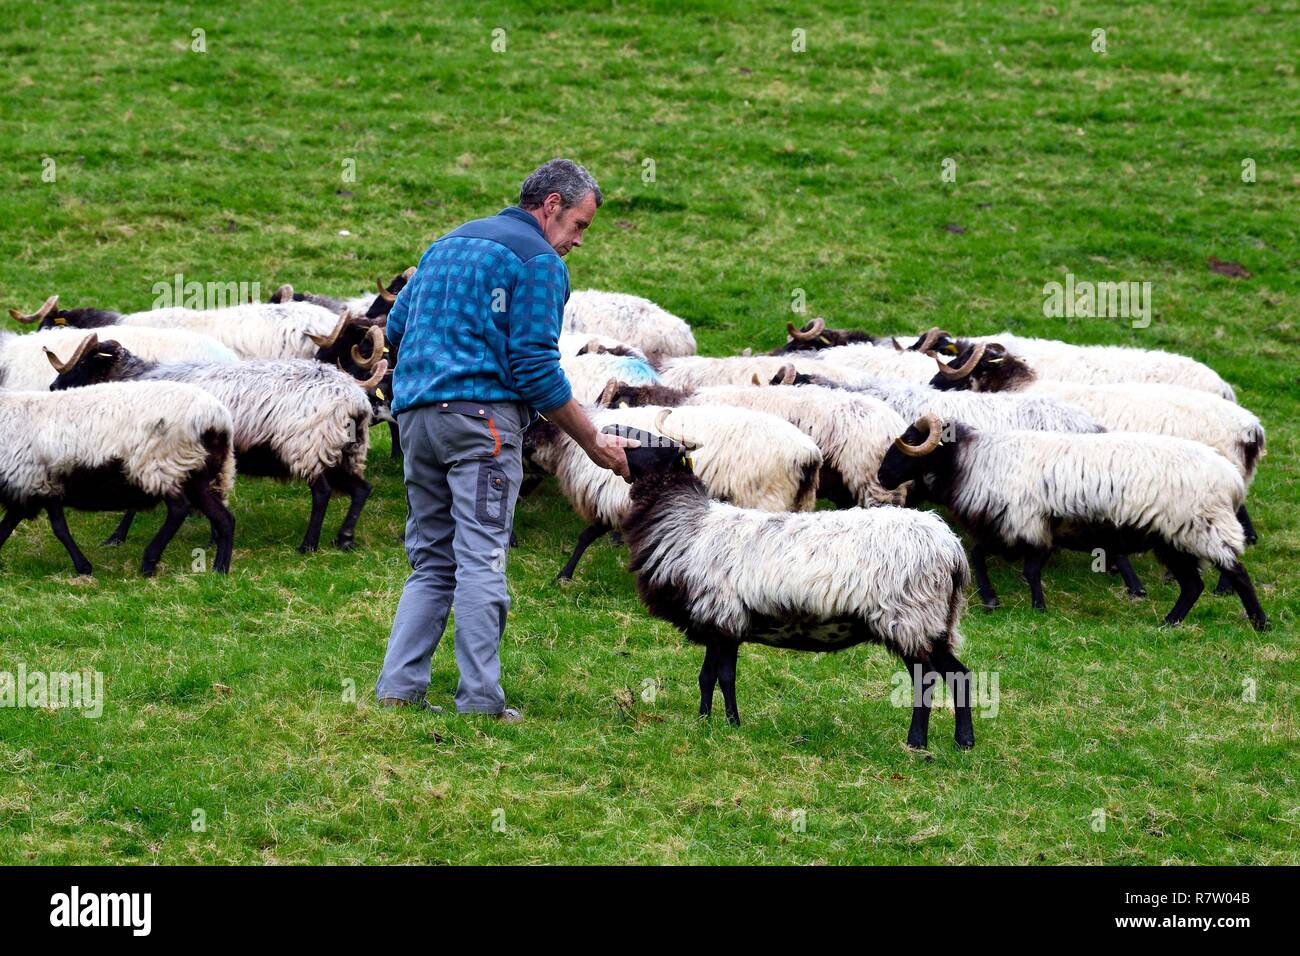 France, Pyrénées Atlantiques, Pays Basque, vallée des Aldudes, d'Urepel, la Manech tête noire eleveuse de moutons Jean-Bernard Etchebarren Banque D'Images